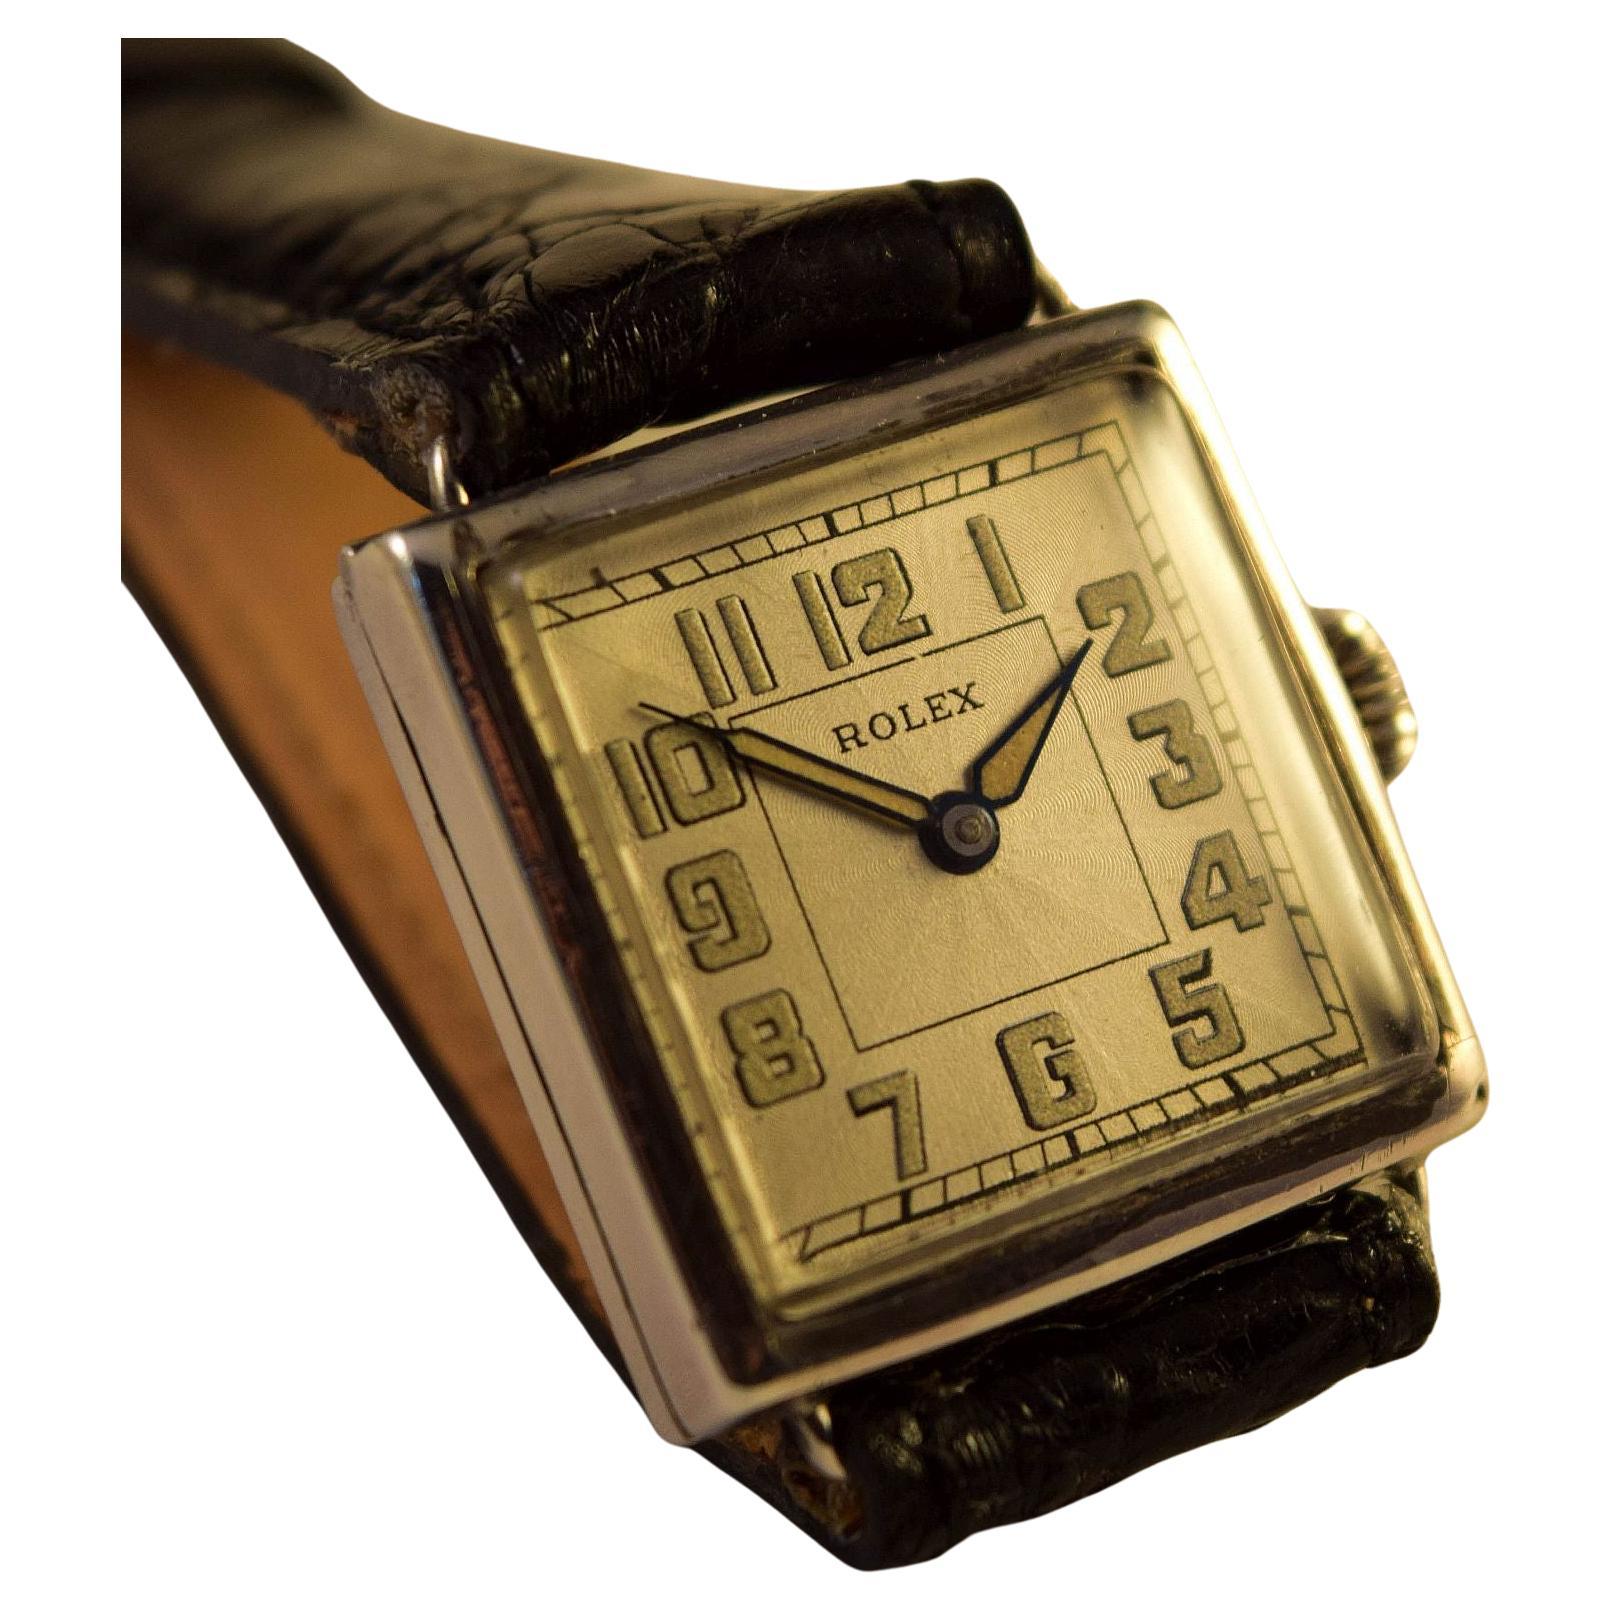 Rolex Vintage Uhr in erstaunlichem Zustand mit sehr schönen Leuchtzahlen und -zeigern.
Leuchtziffern galten damals als sehr nützlich, weil sie im Dunkeln besser sichtbar waren.
Zifferblatt ist signiert Rolex so wie die Innenseite zurück und die